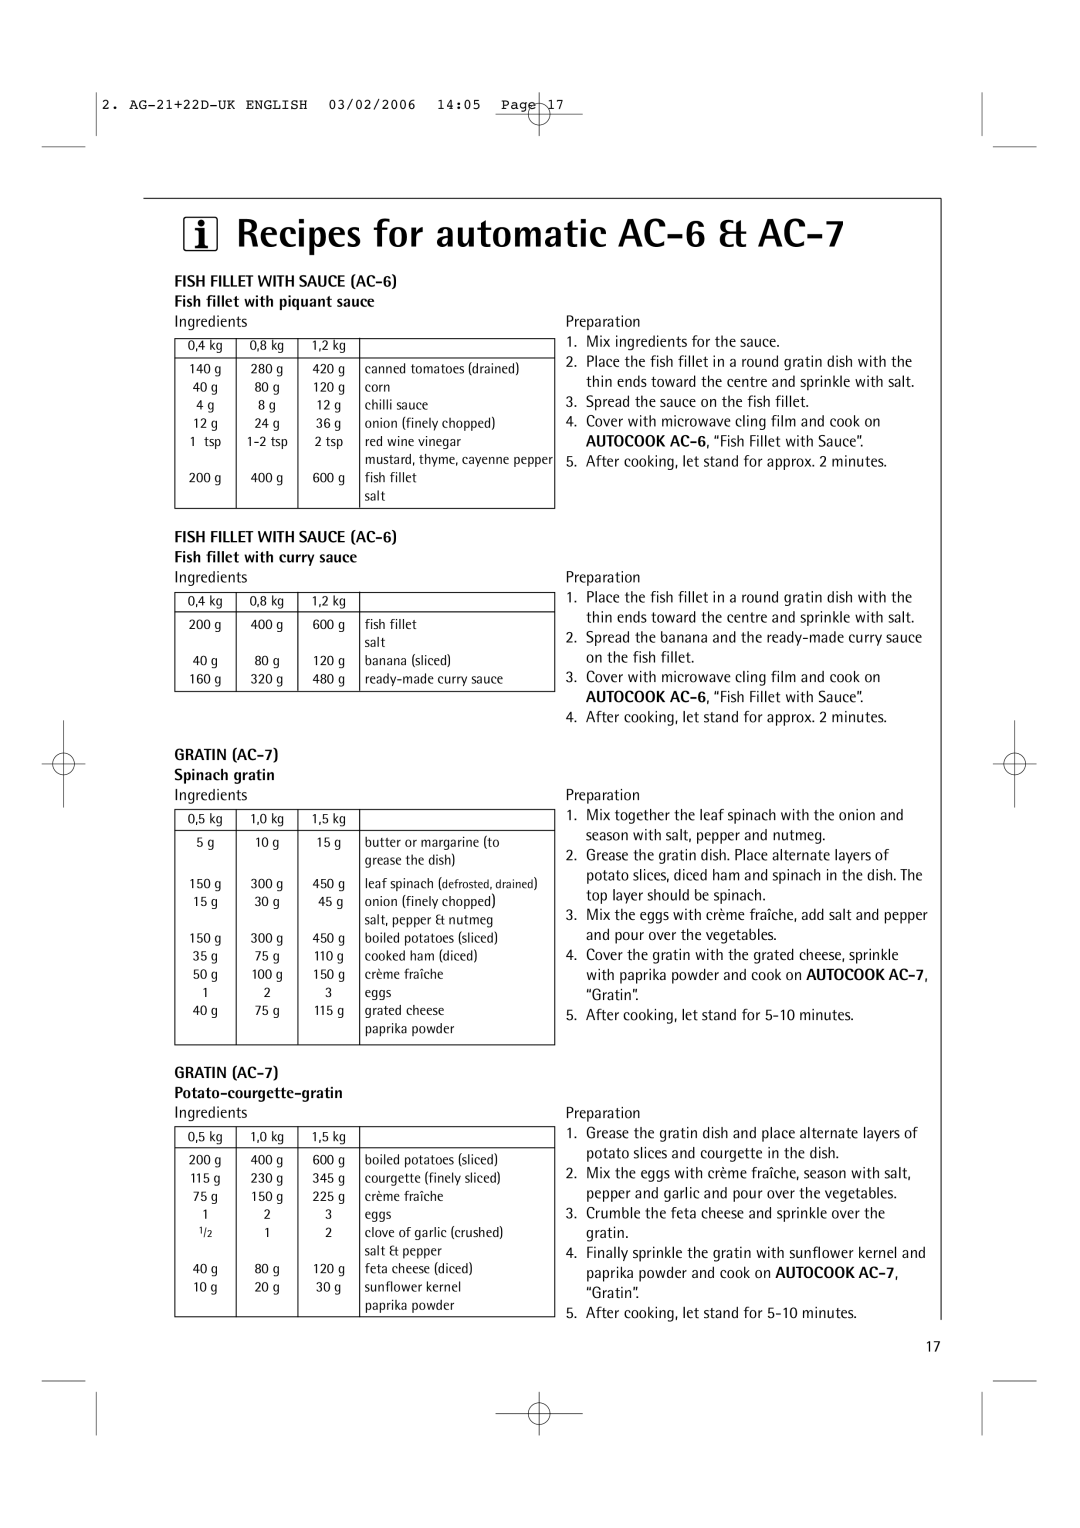 AEG MC1751E Recipes for automatic AC-6& AC-7, FISH FILLET WITH SAUCE AC-6, Fish fillet with piquant sauce, GRATIN AC-7 